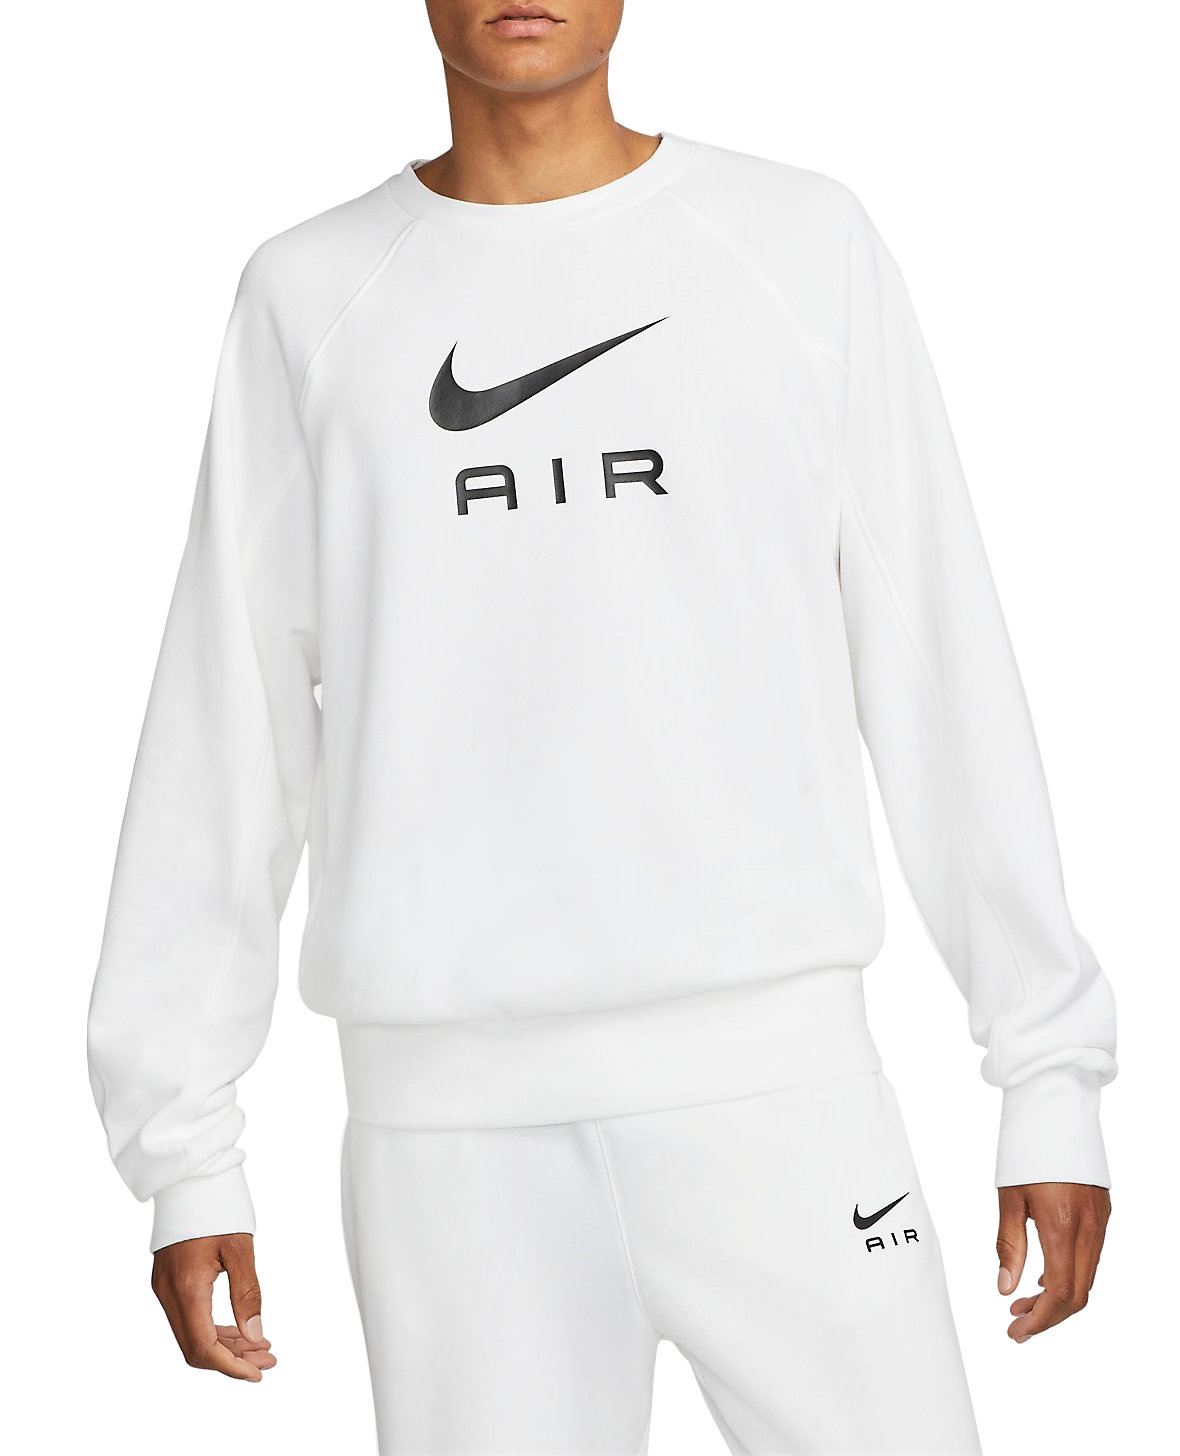 Felpe Nike Air FT Crew Sweatshirt